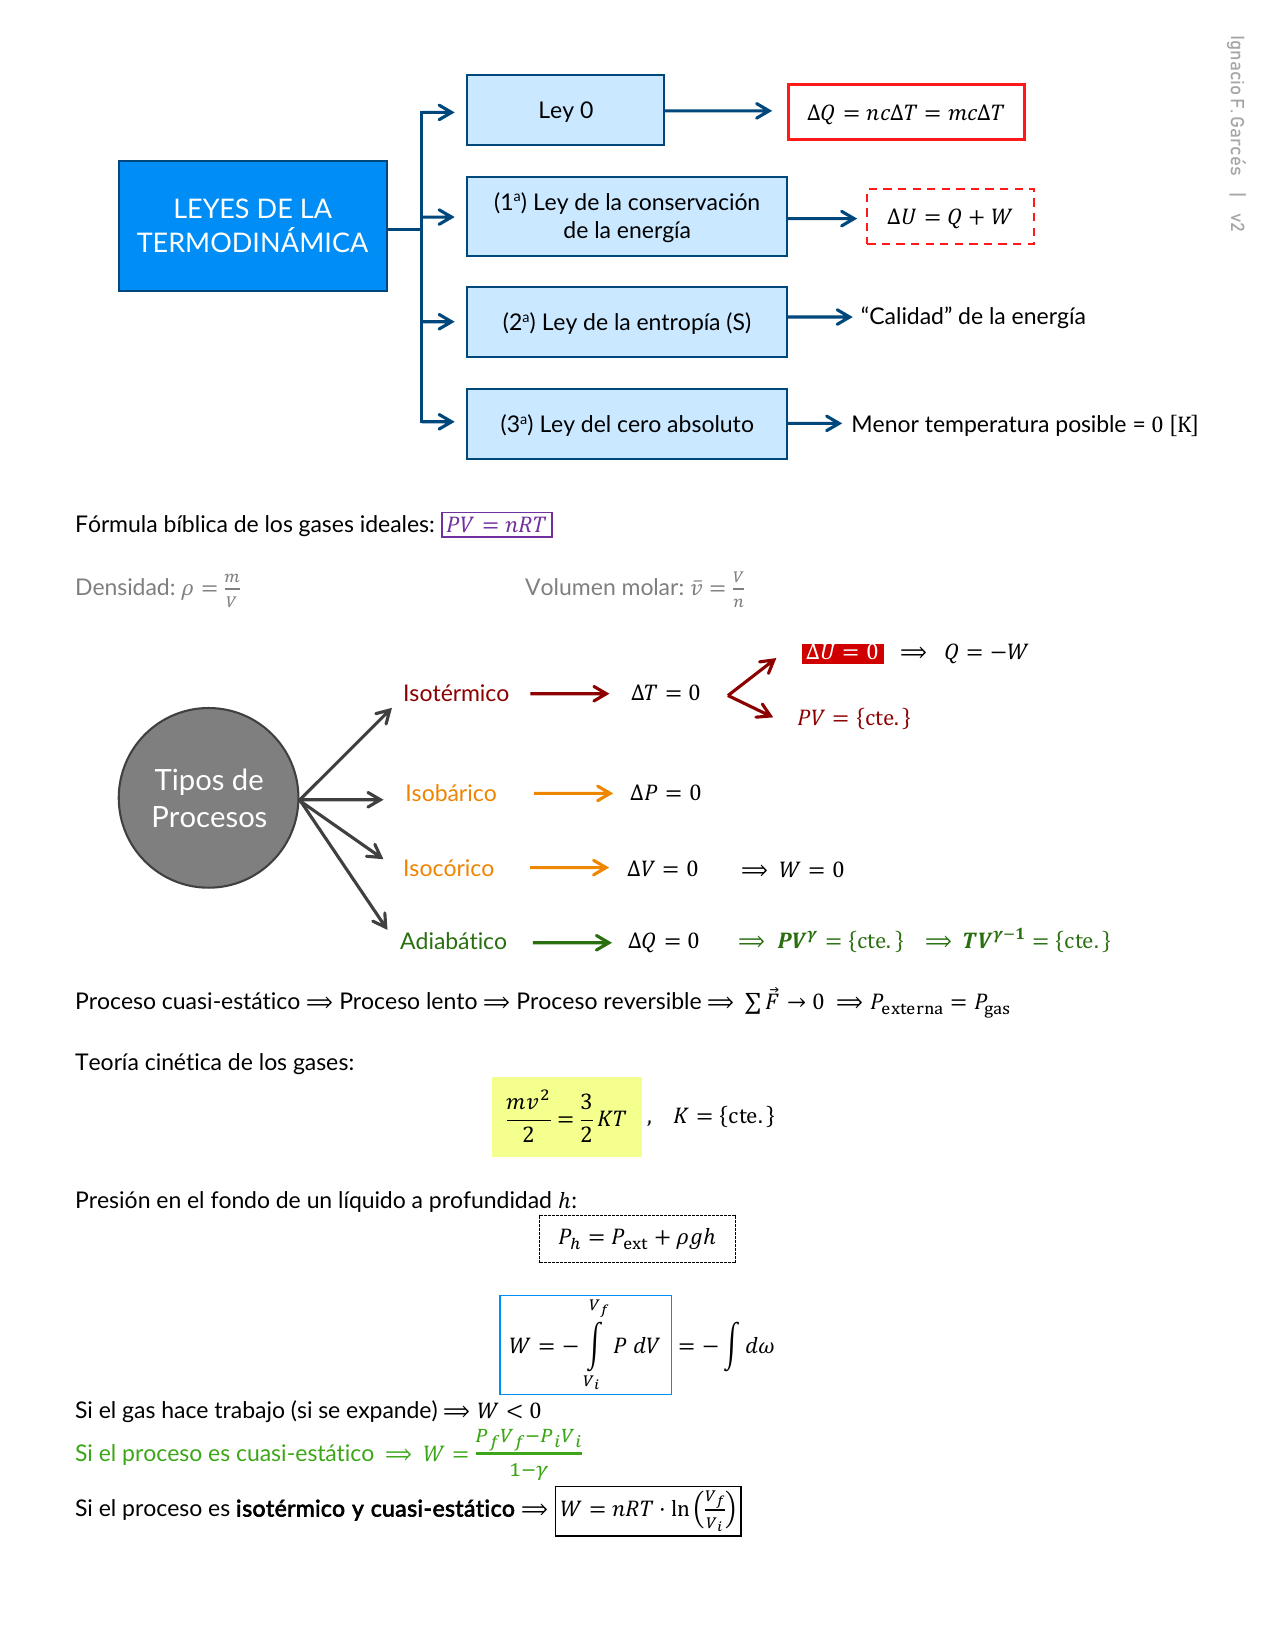 Termo.] Resumen de fórmulas (ifgarces) v2